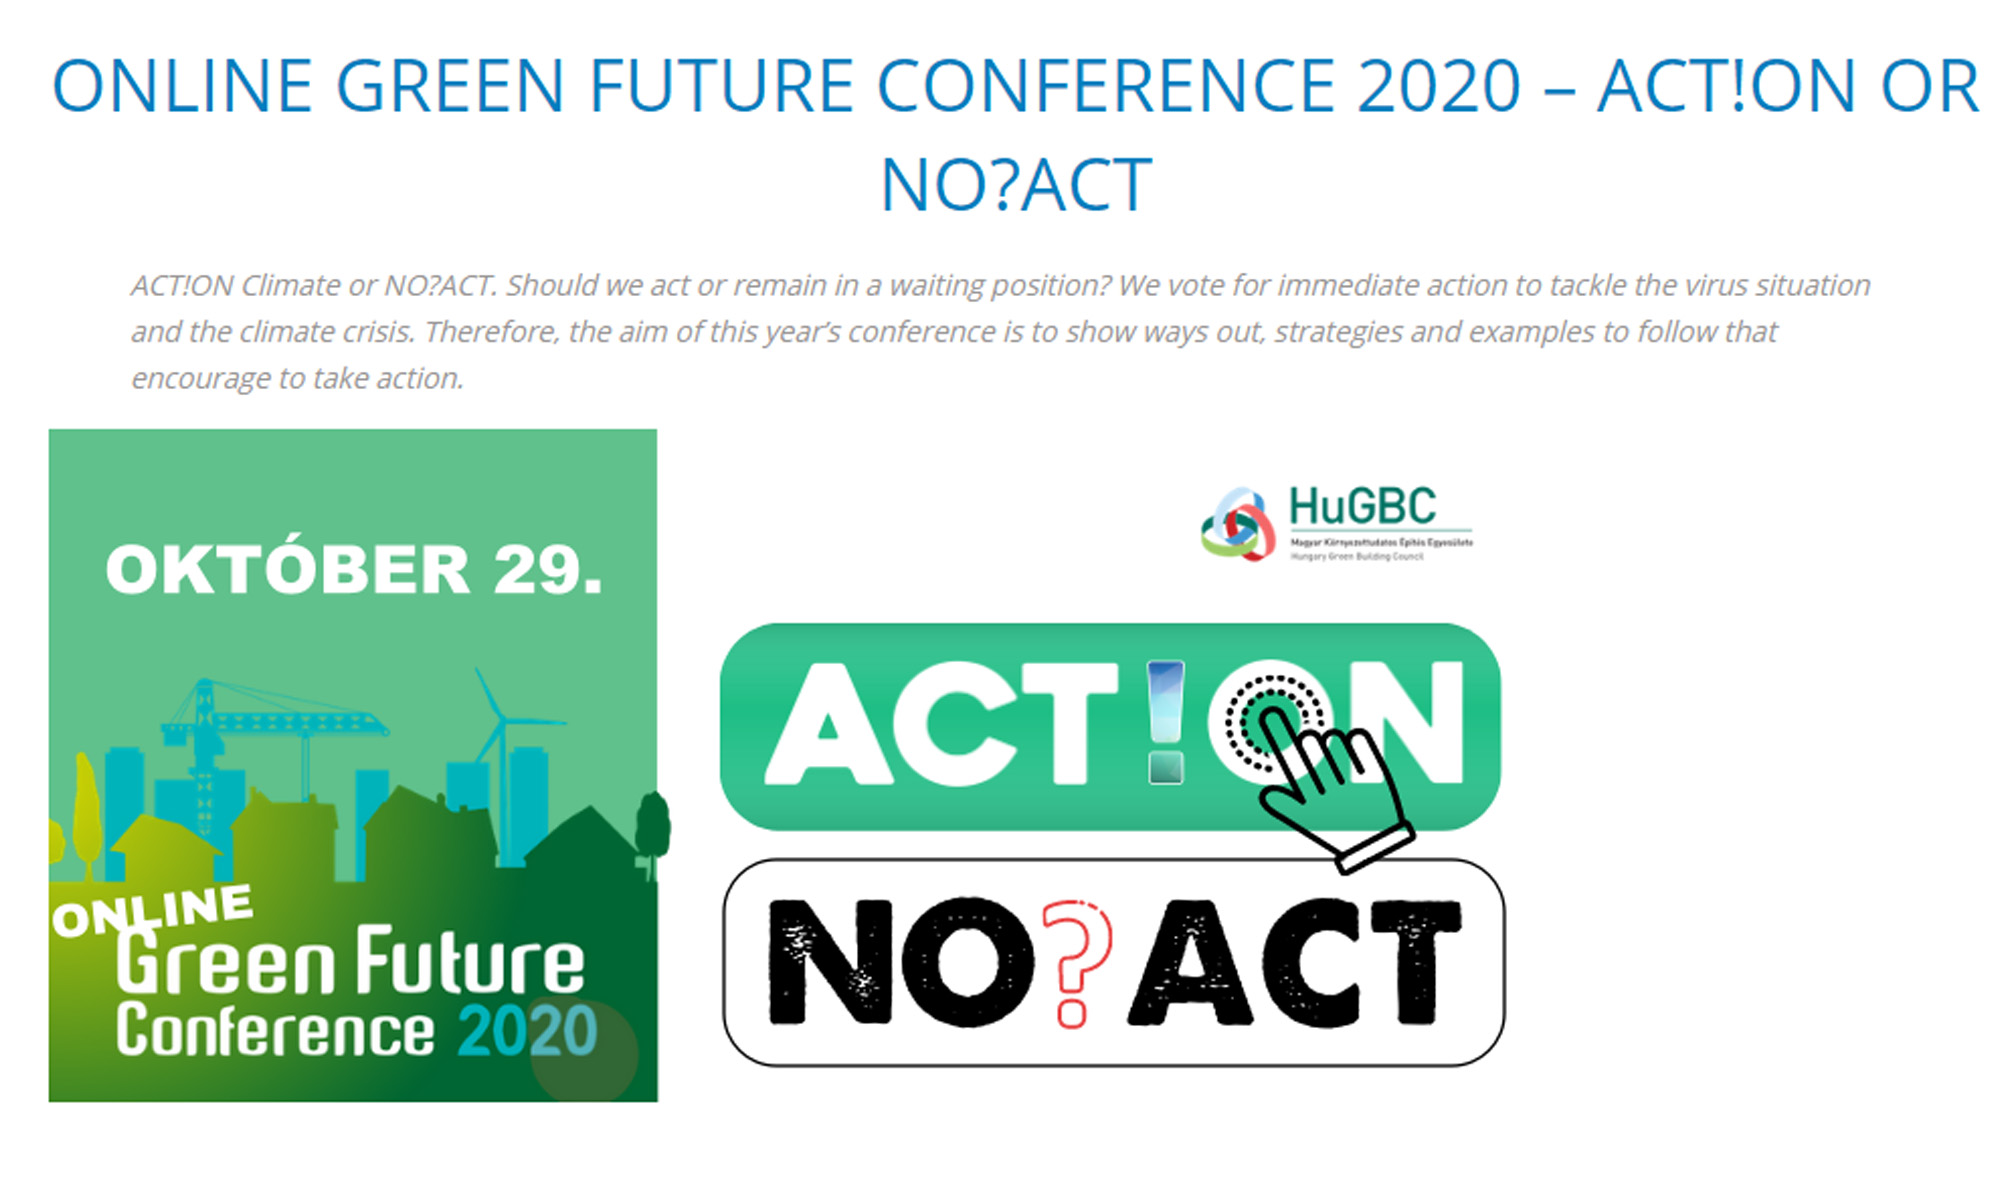 Zúčastněte se Online konference o zelených budovách green future: příklady z Holandska